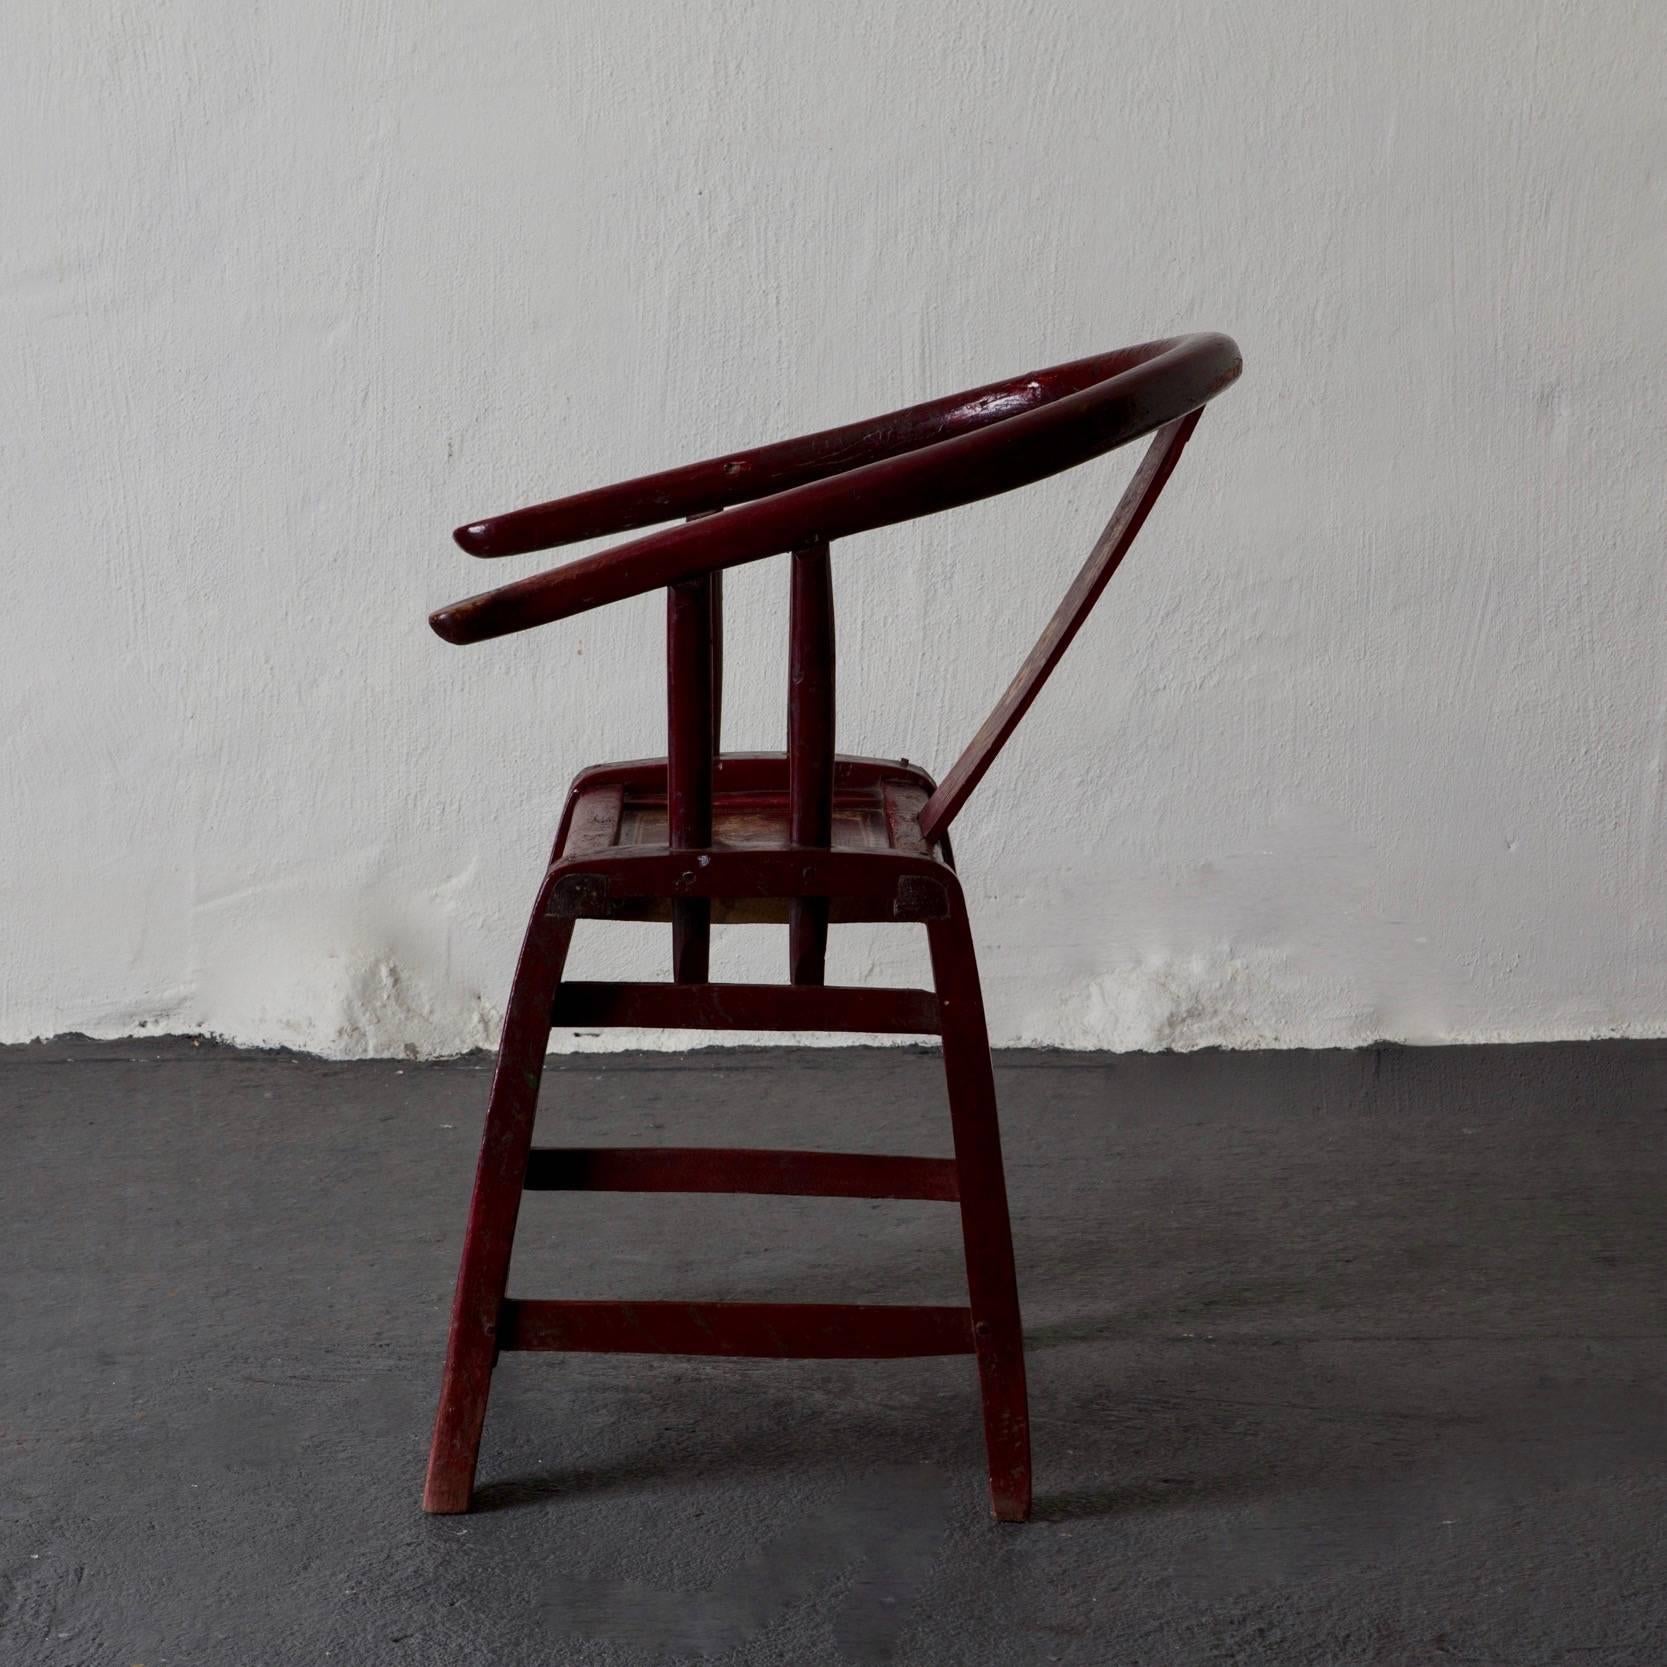 Fauteuil rouge Fauteuil fer à cheval 19ème siècle, Chine. Un beau fauteuil fabriqué dans un style fer à cheval, au cours du 19ème siècle en Chine. Peinture rouge foncé d'origine